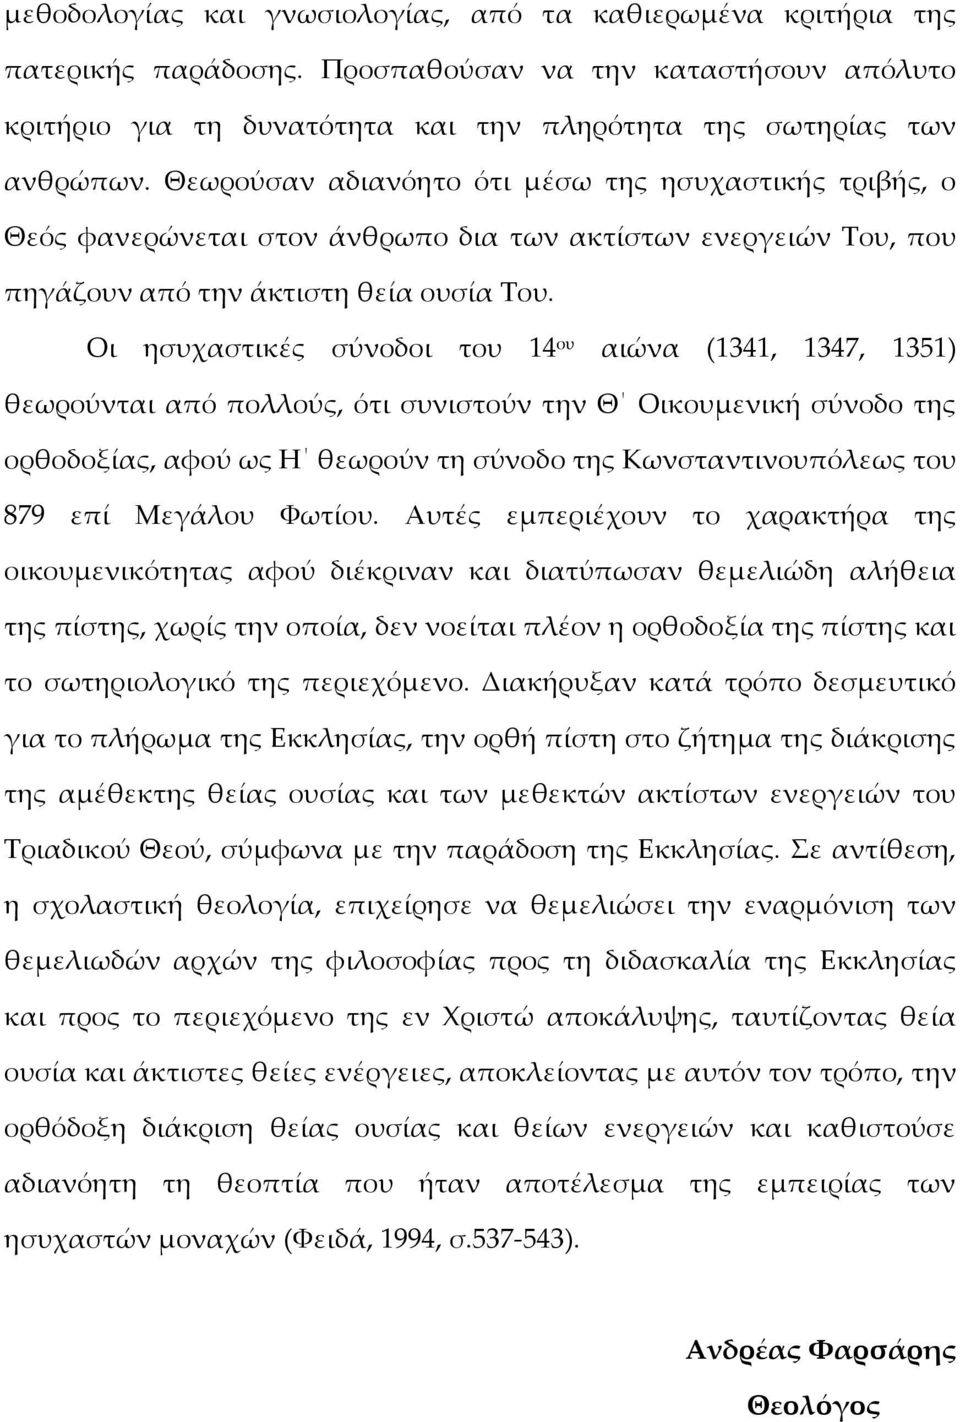 Οι ησυχαστικές σύνοδοι του 14 ου αιώνα (1341, 1347, 1351) θεωρούνται από πολλούς, ότι συνιστούν την Θ Οικουμενική σύνοδο της ορθοδοξίας, αφού ως Η θεωρούν τη σύνοδο της Κωνσταντινουπόλεως του 879 επί